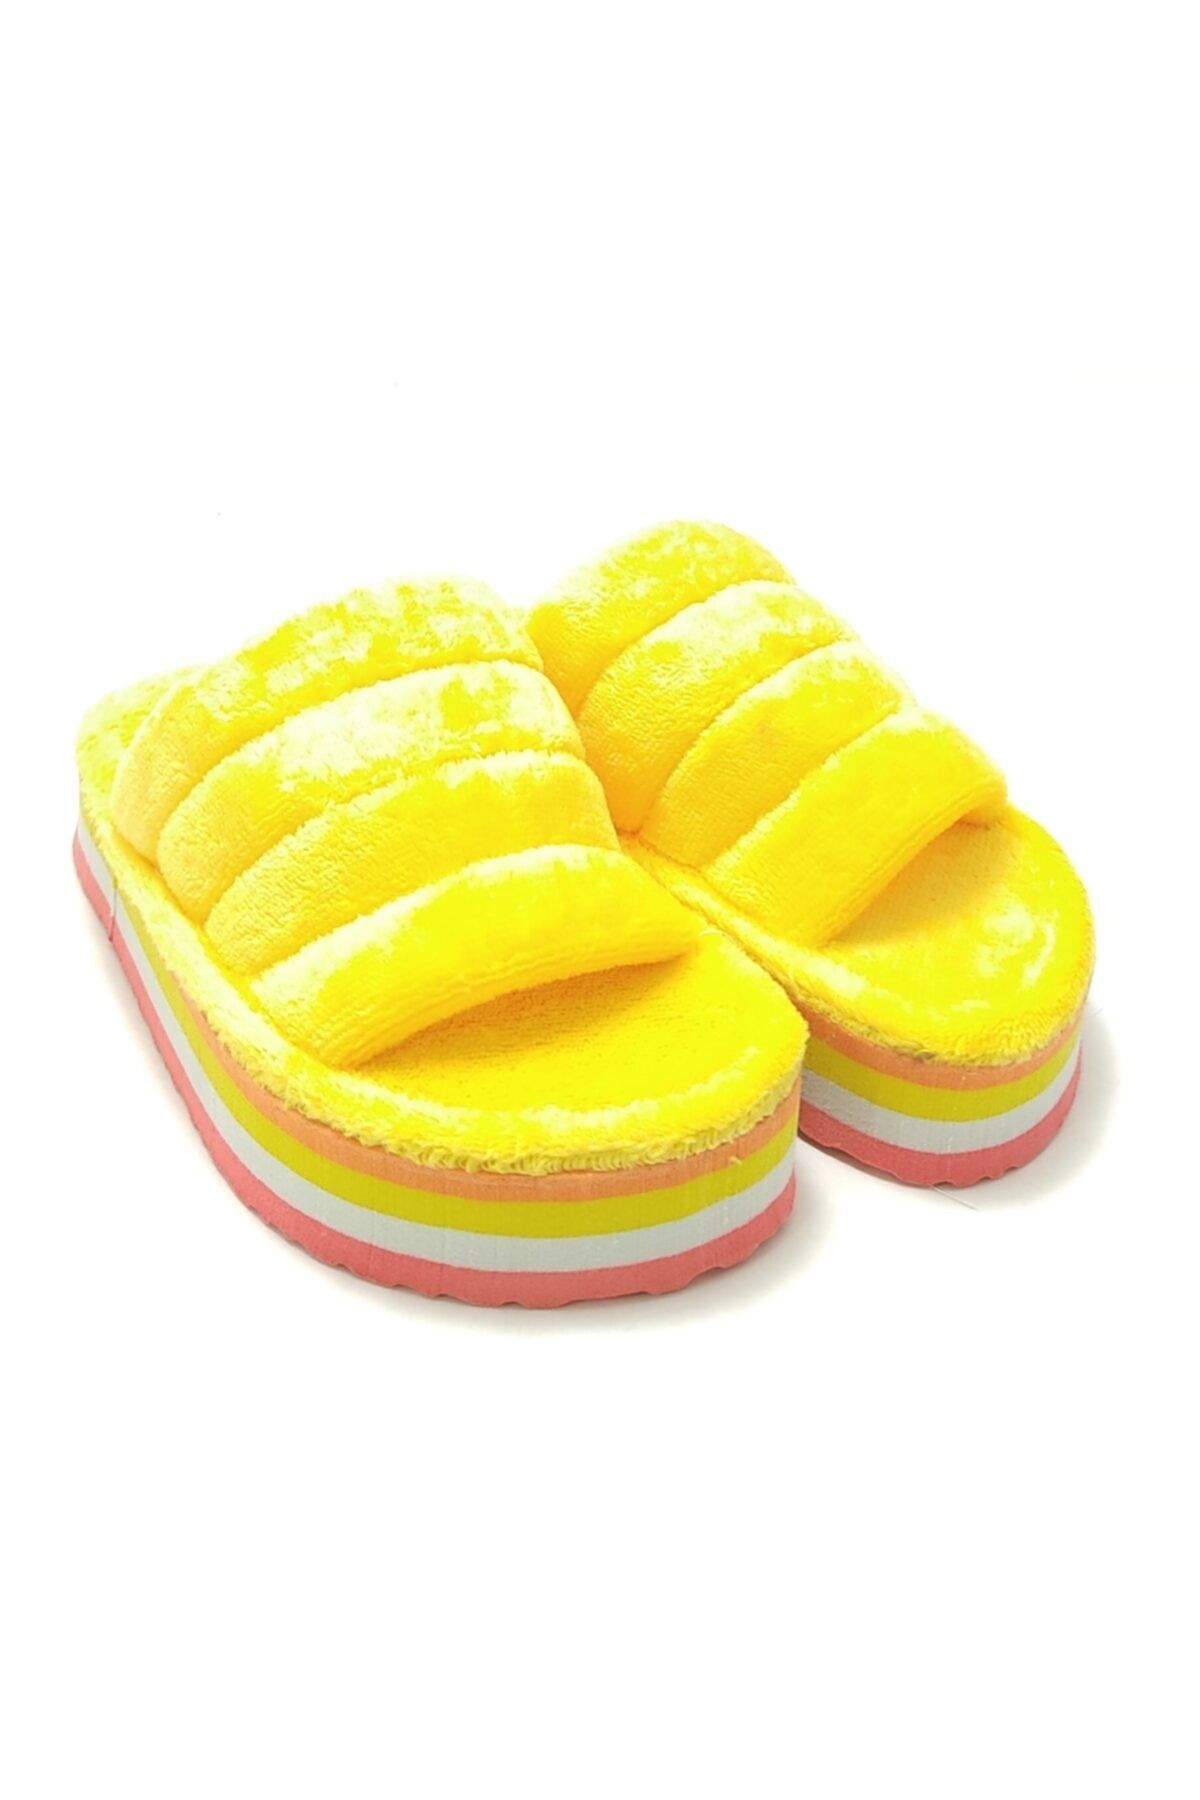 yagmur ayakkabı Tabanı Renkli Peluş Terlik